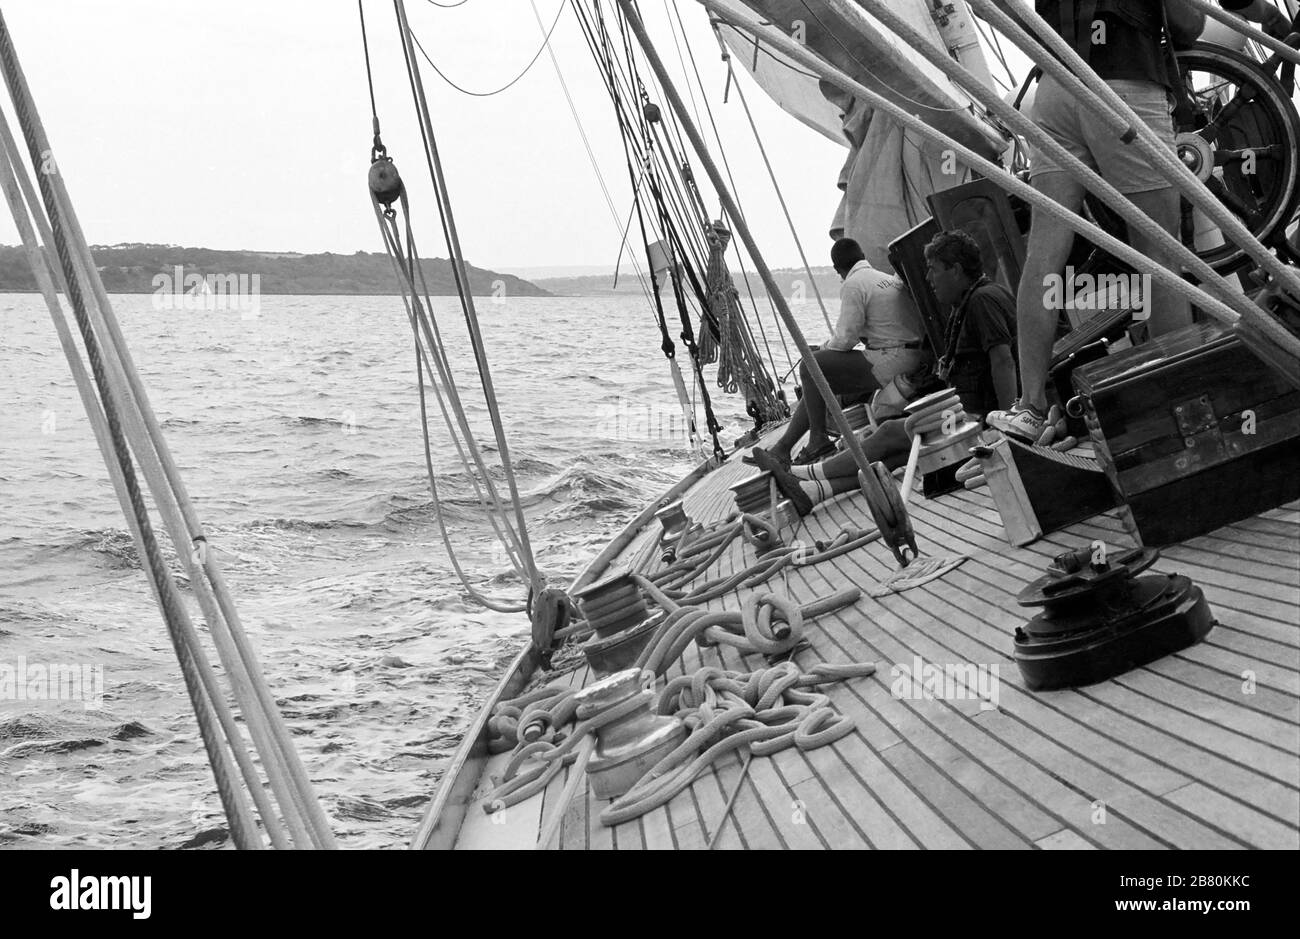 Le pont qui se tourne vers l'avant à bord du yacht J Class 'Velsheda' après sa première repose, naviguant dans le Solent, Hampshire, Angleterre, Royaume-Uni, été 1991. Archiver la photographie de film noir et blanc Banque D'Images